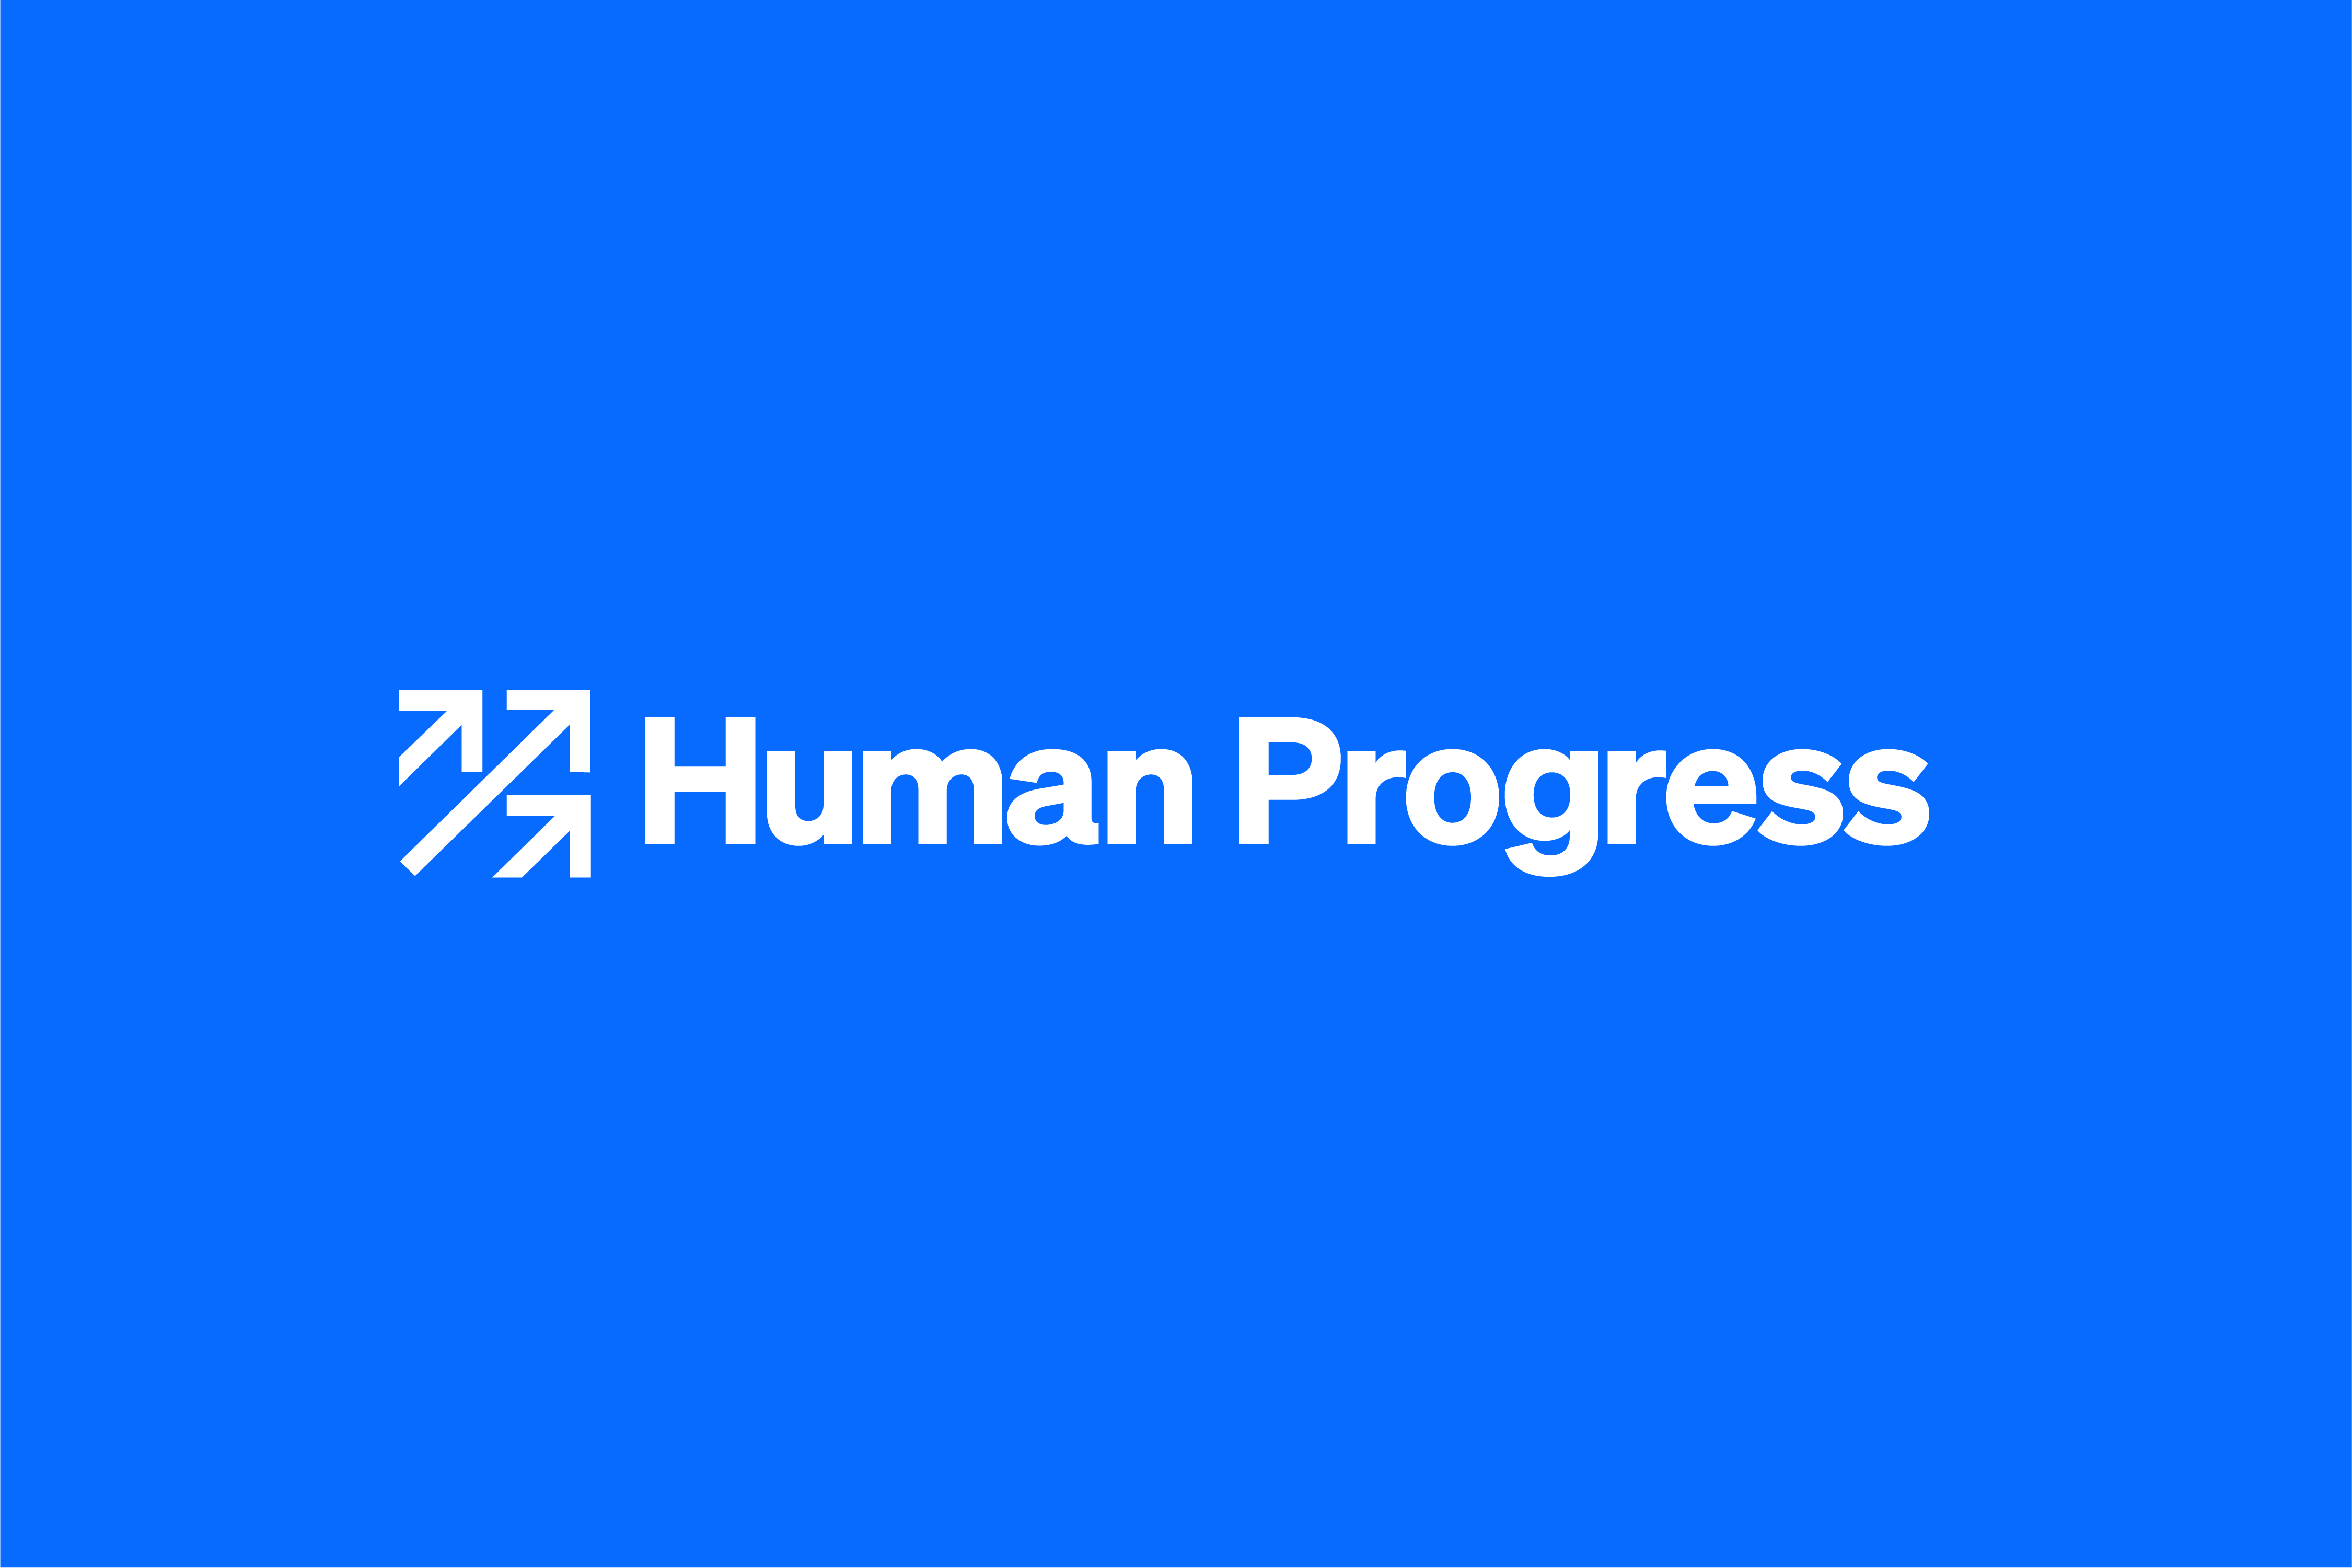 www.humanprogress.org